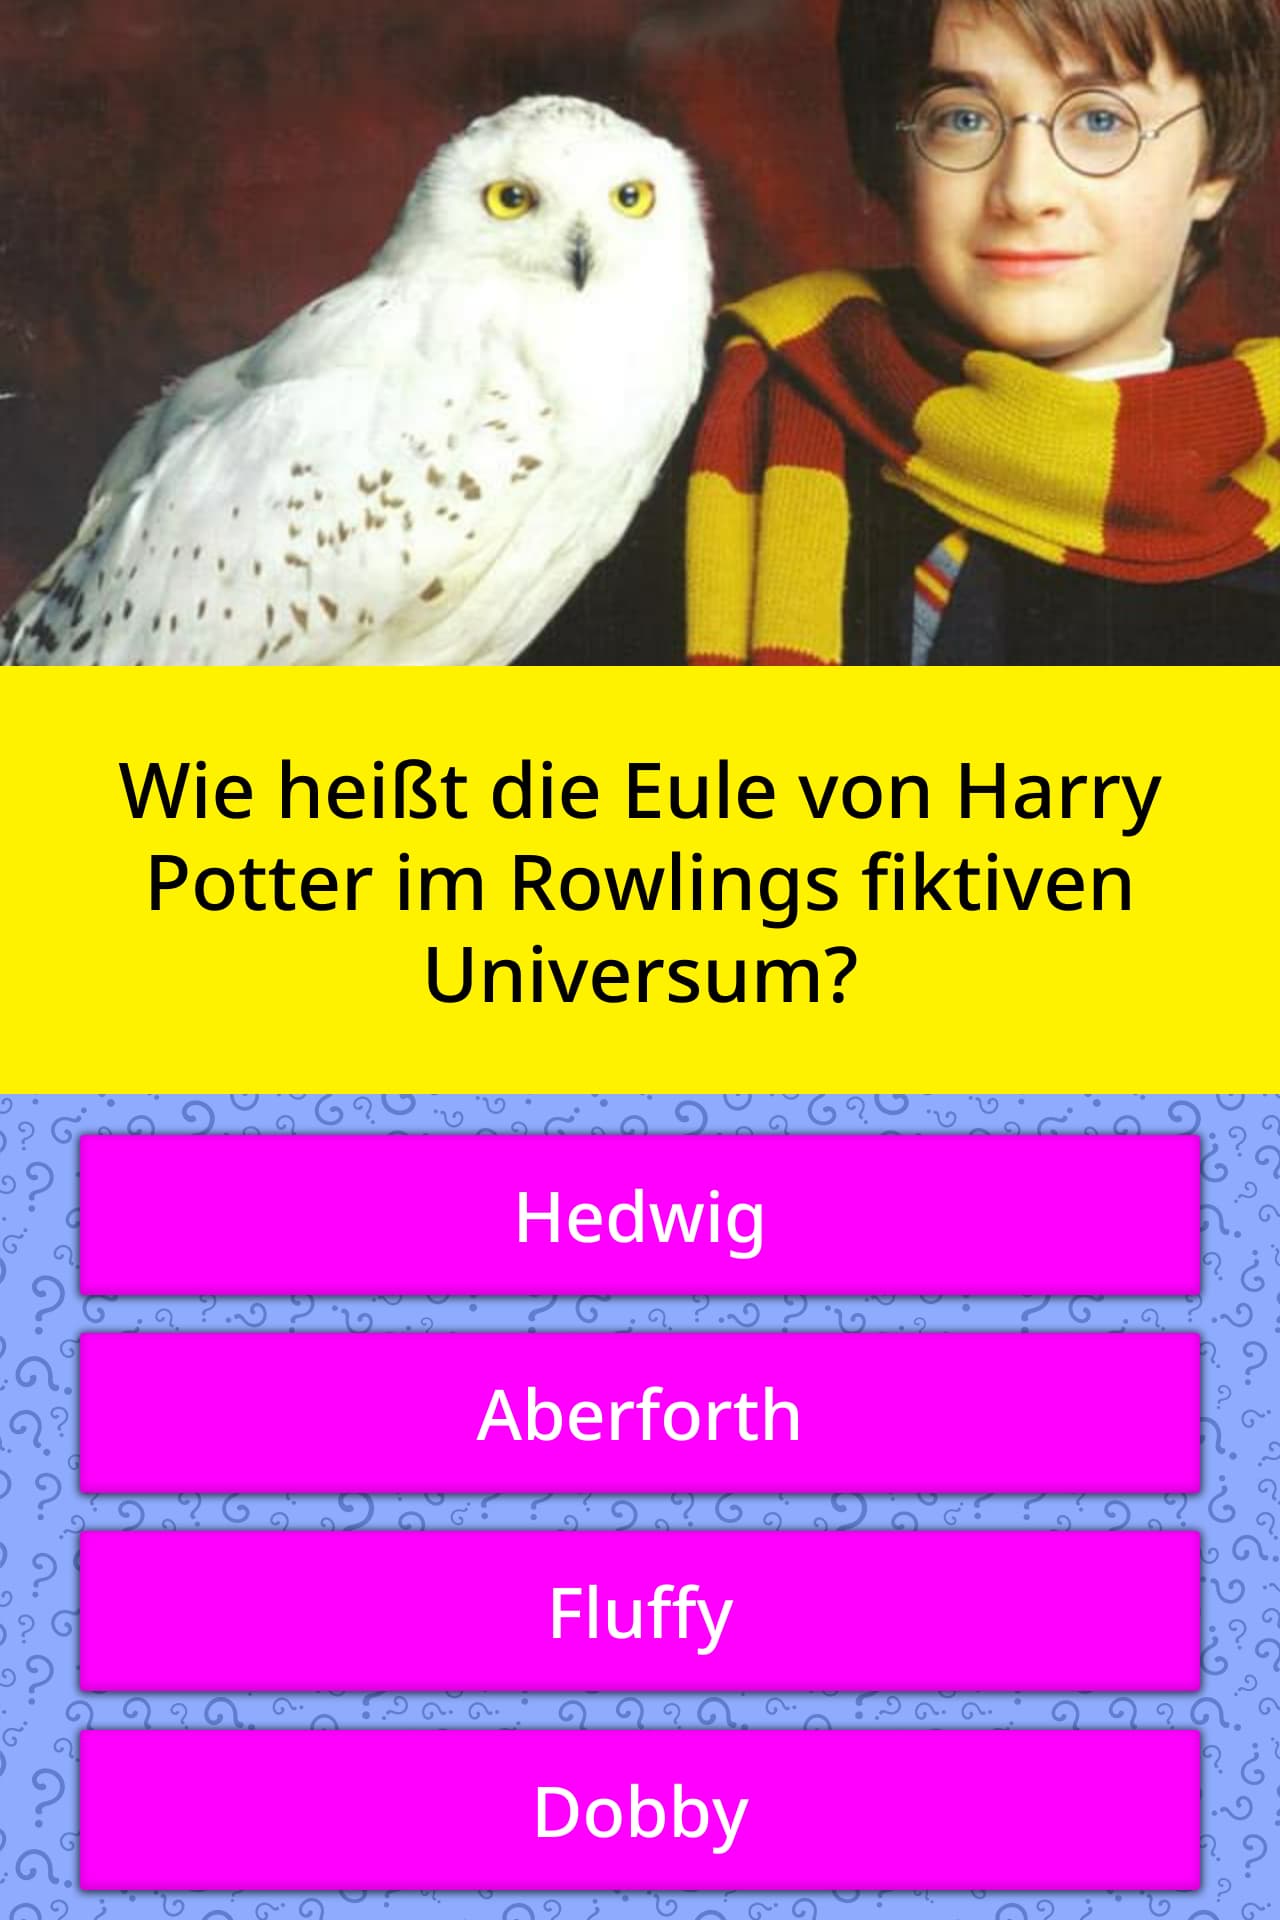 Wie Heisst Die Eule Von Harry Potter Quiz Antworten Quizzclub